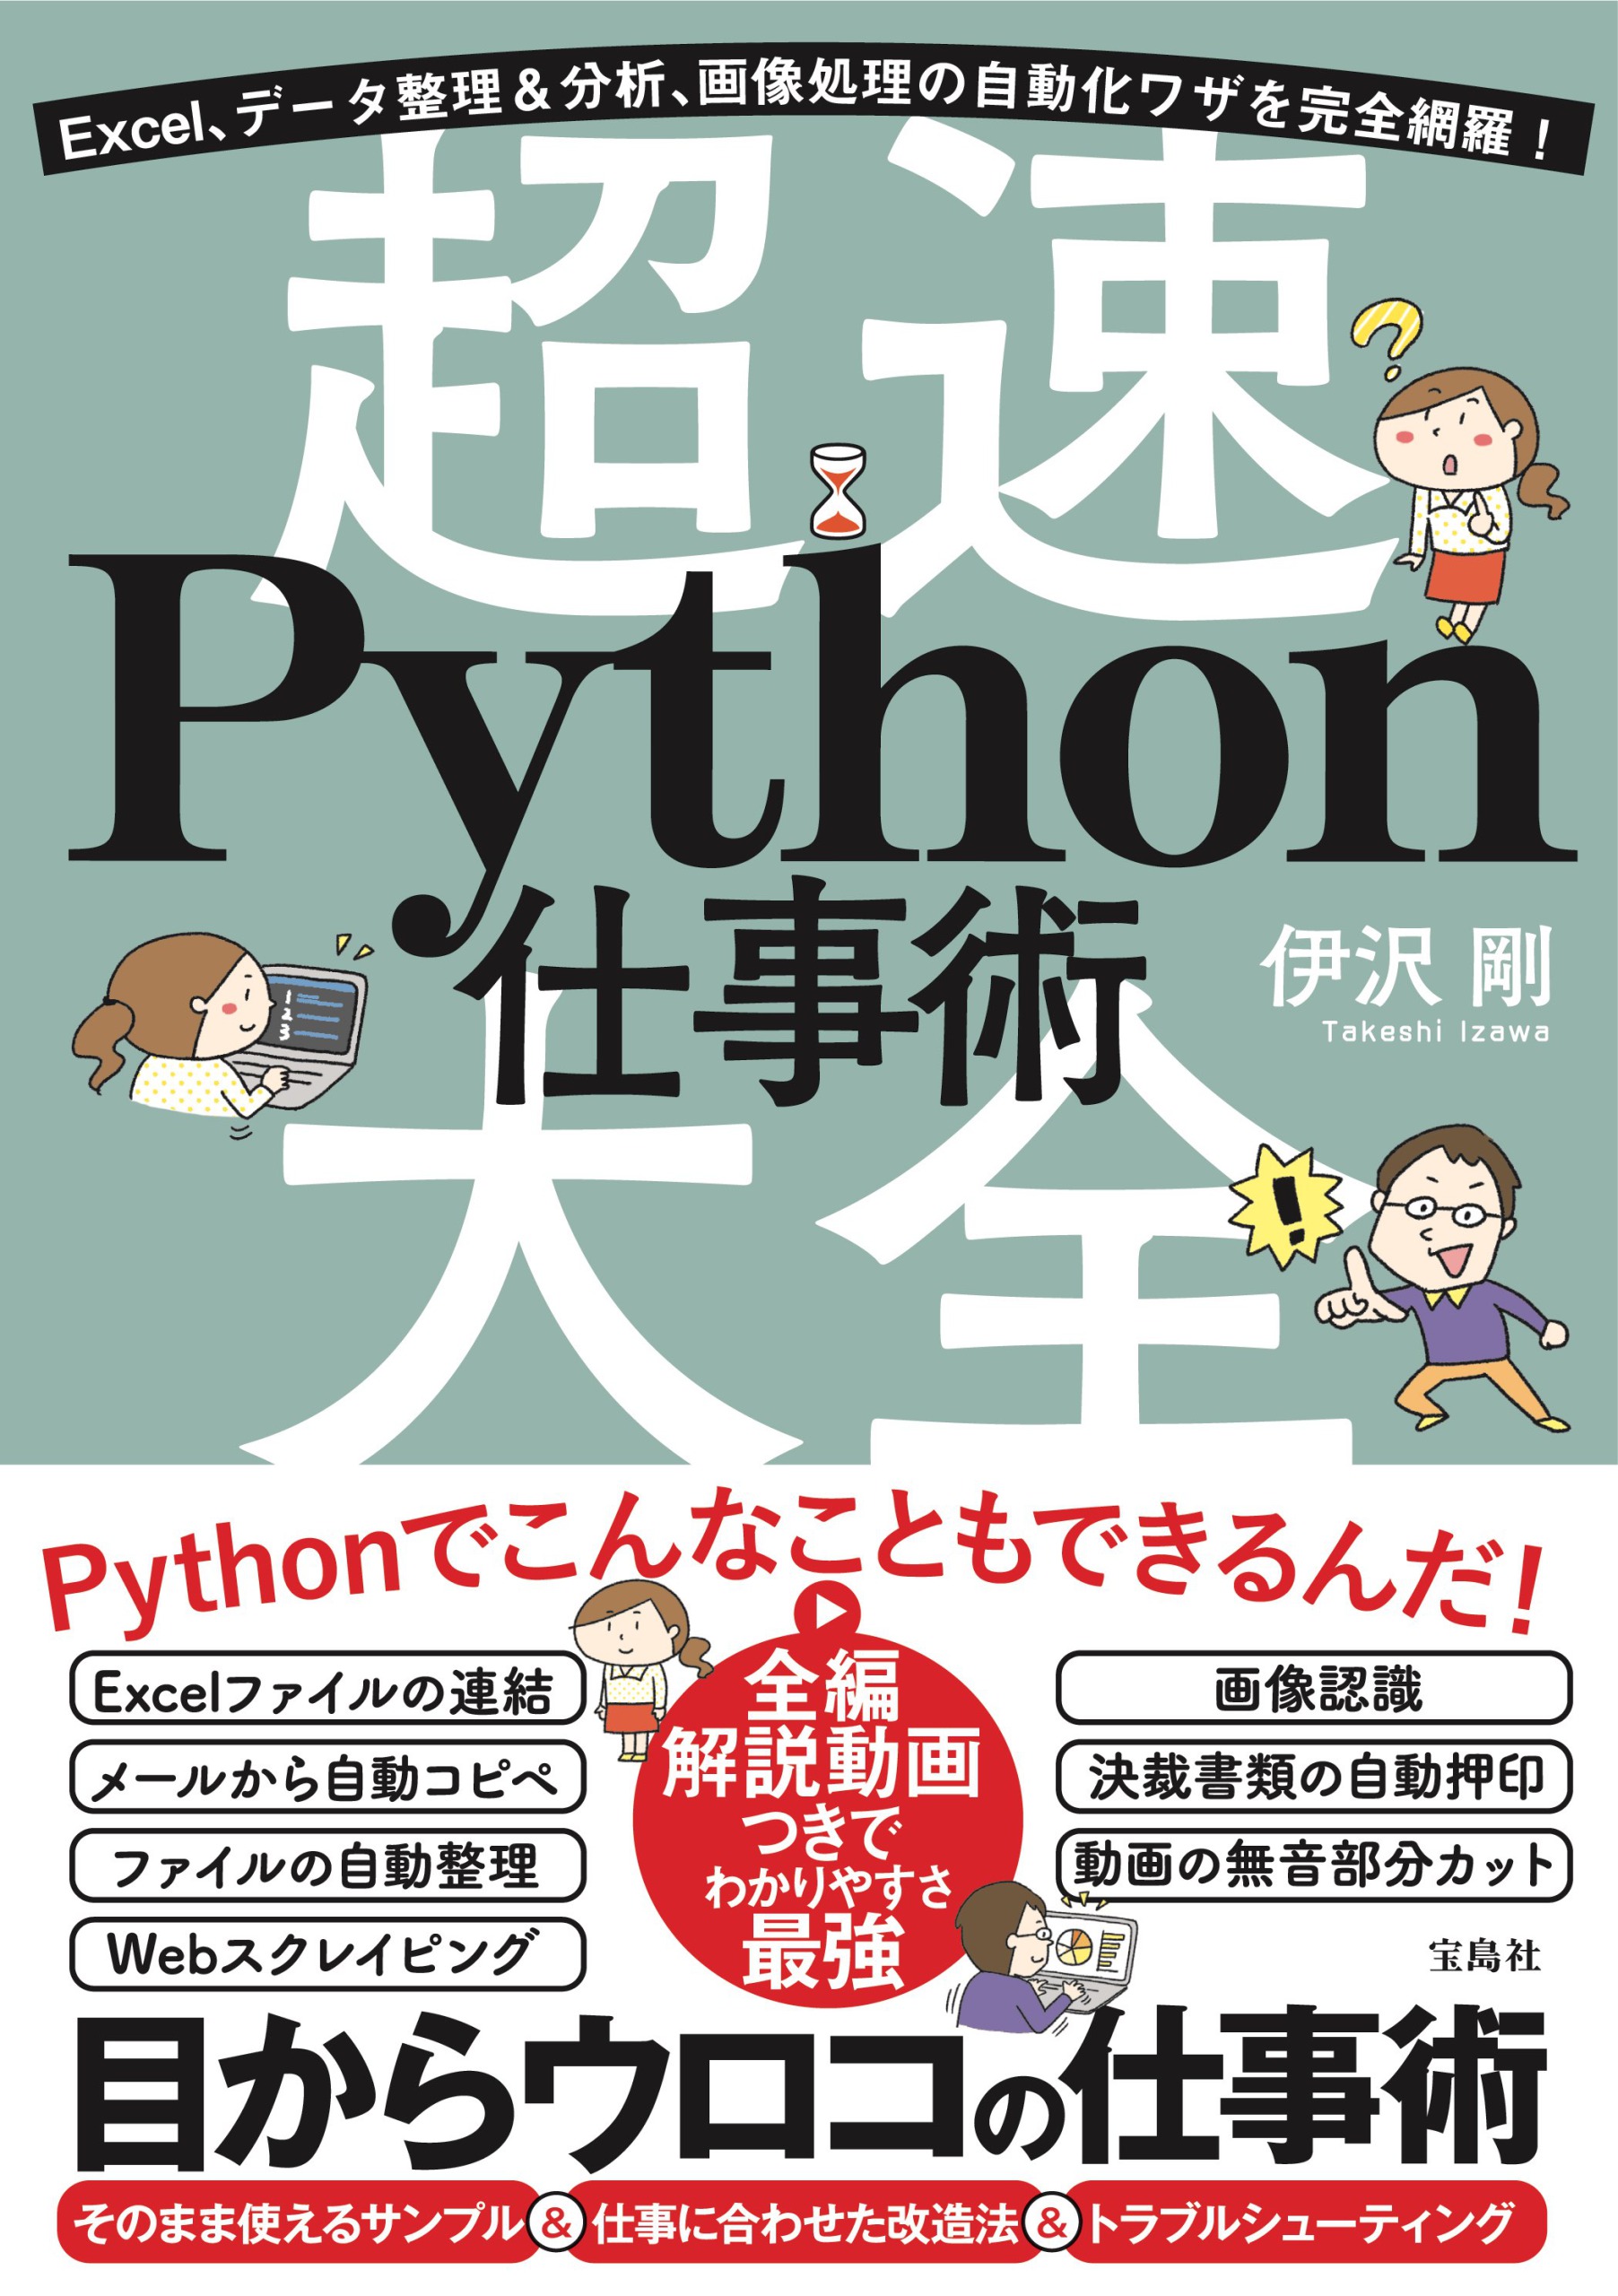 会員書籍「超速Python仕事術大全」